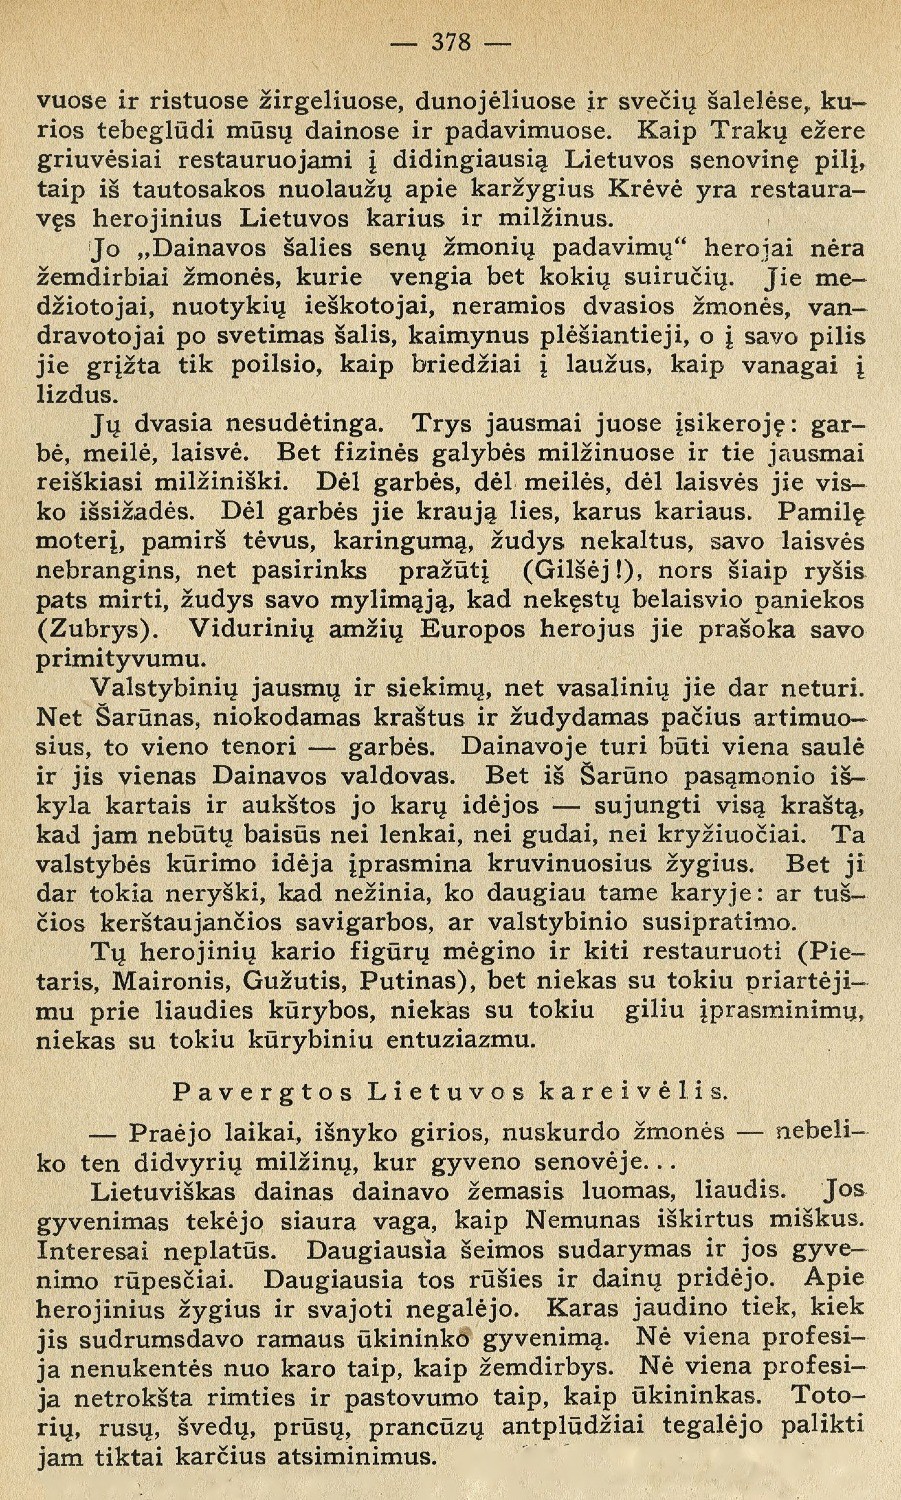 Karys ir Karas literatūroje (Eskizai) / J. Ambrazevičius // Židinys. – 1935, Nr. 11, p. 377–385.